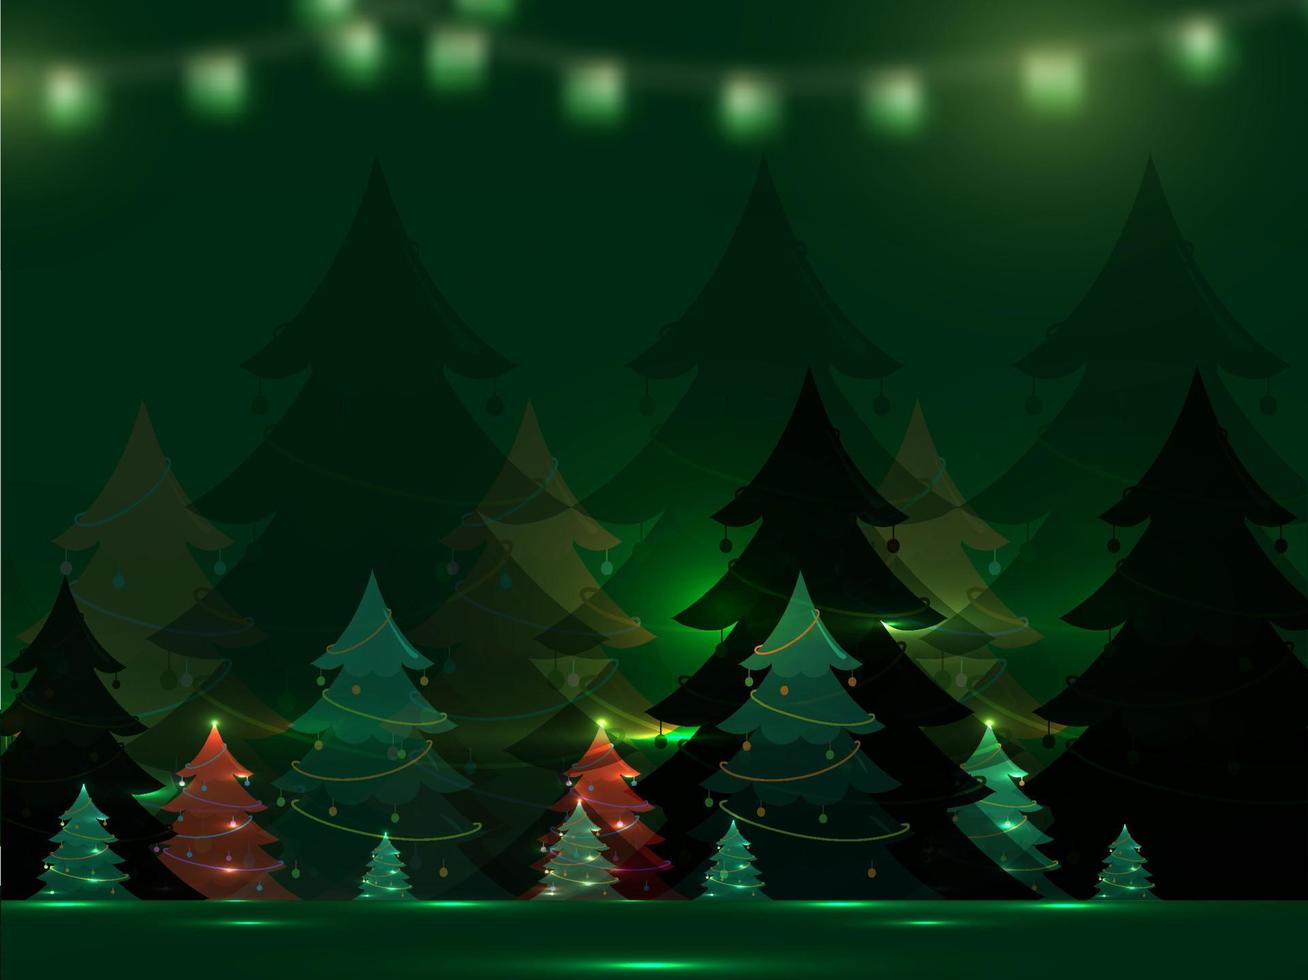 dekorativ Weihnachten Bäume mit Beleuchtung bewirken auf Grün Hintergrund. vektor